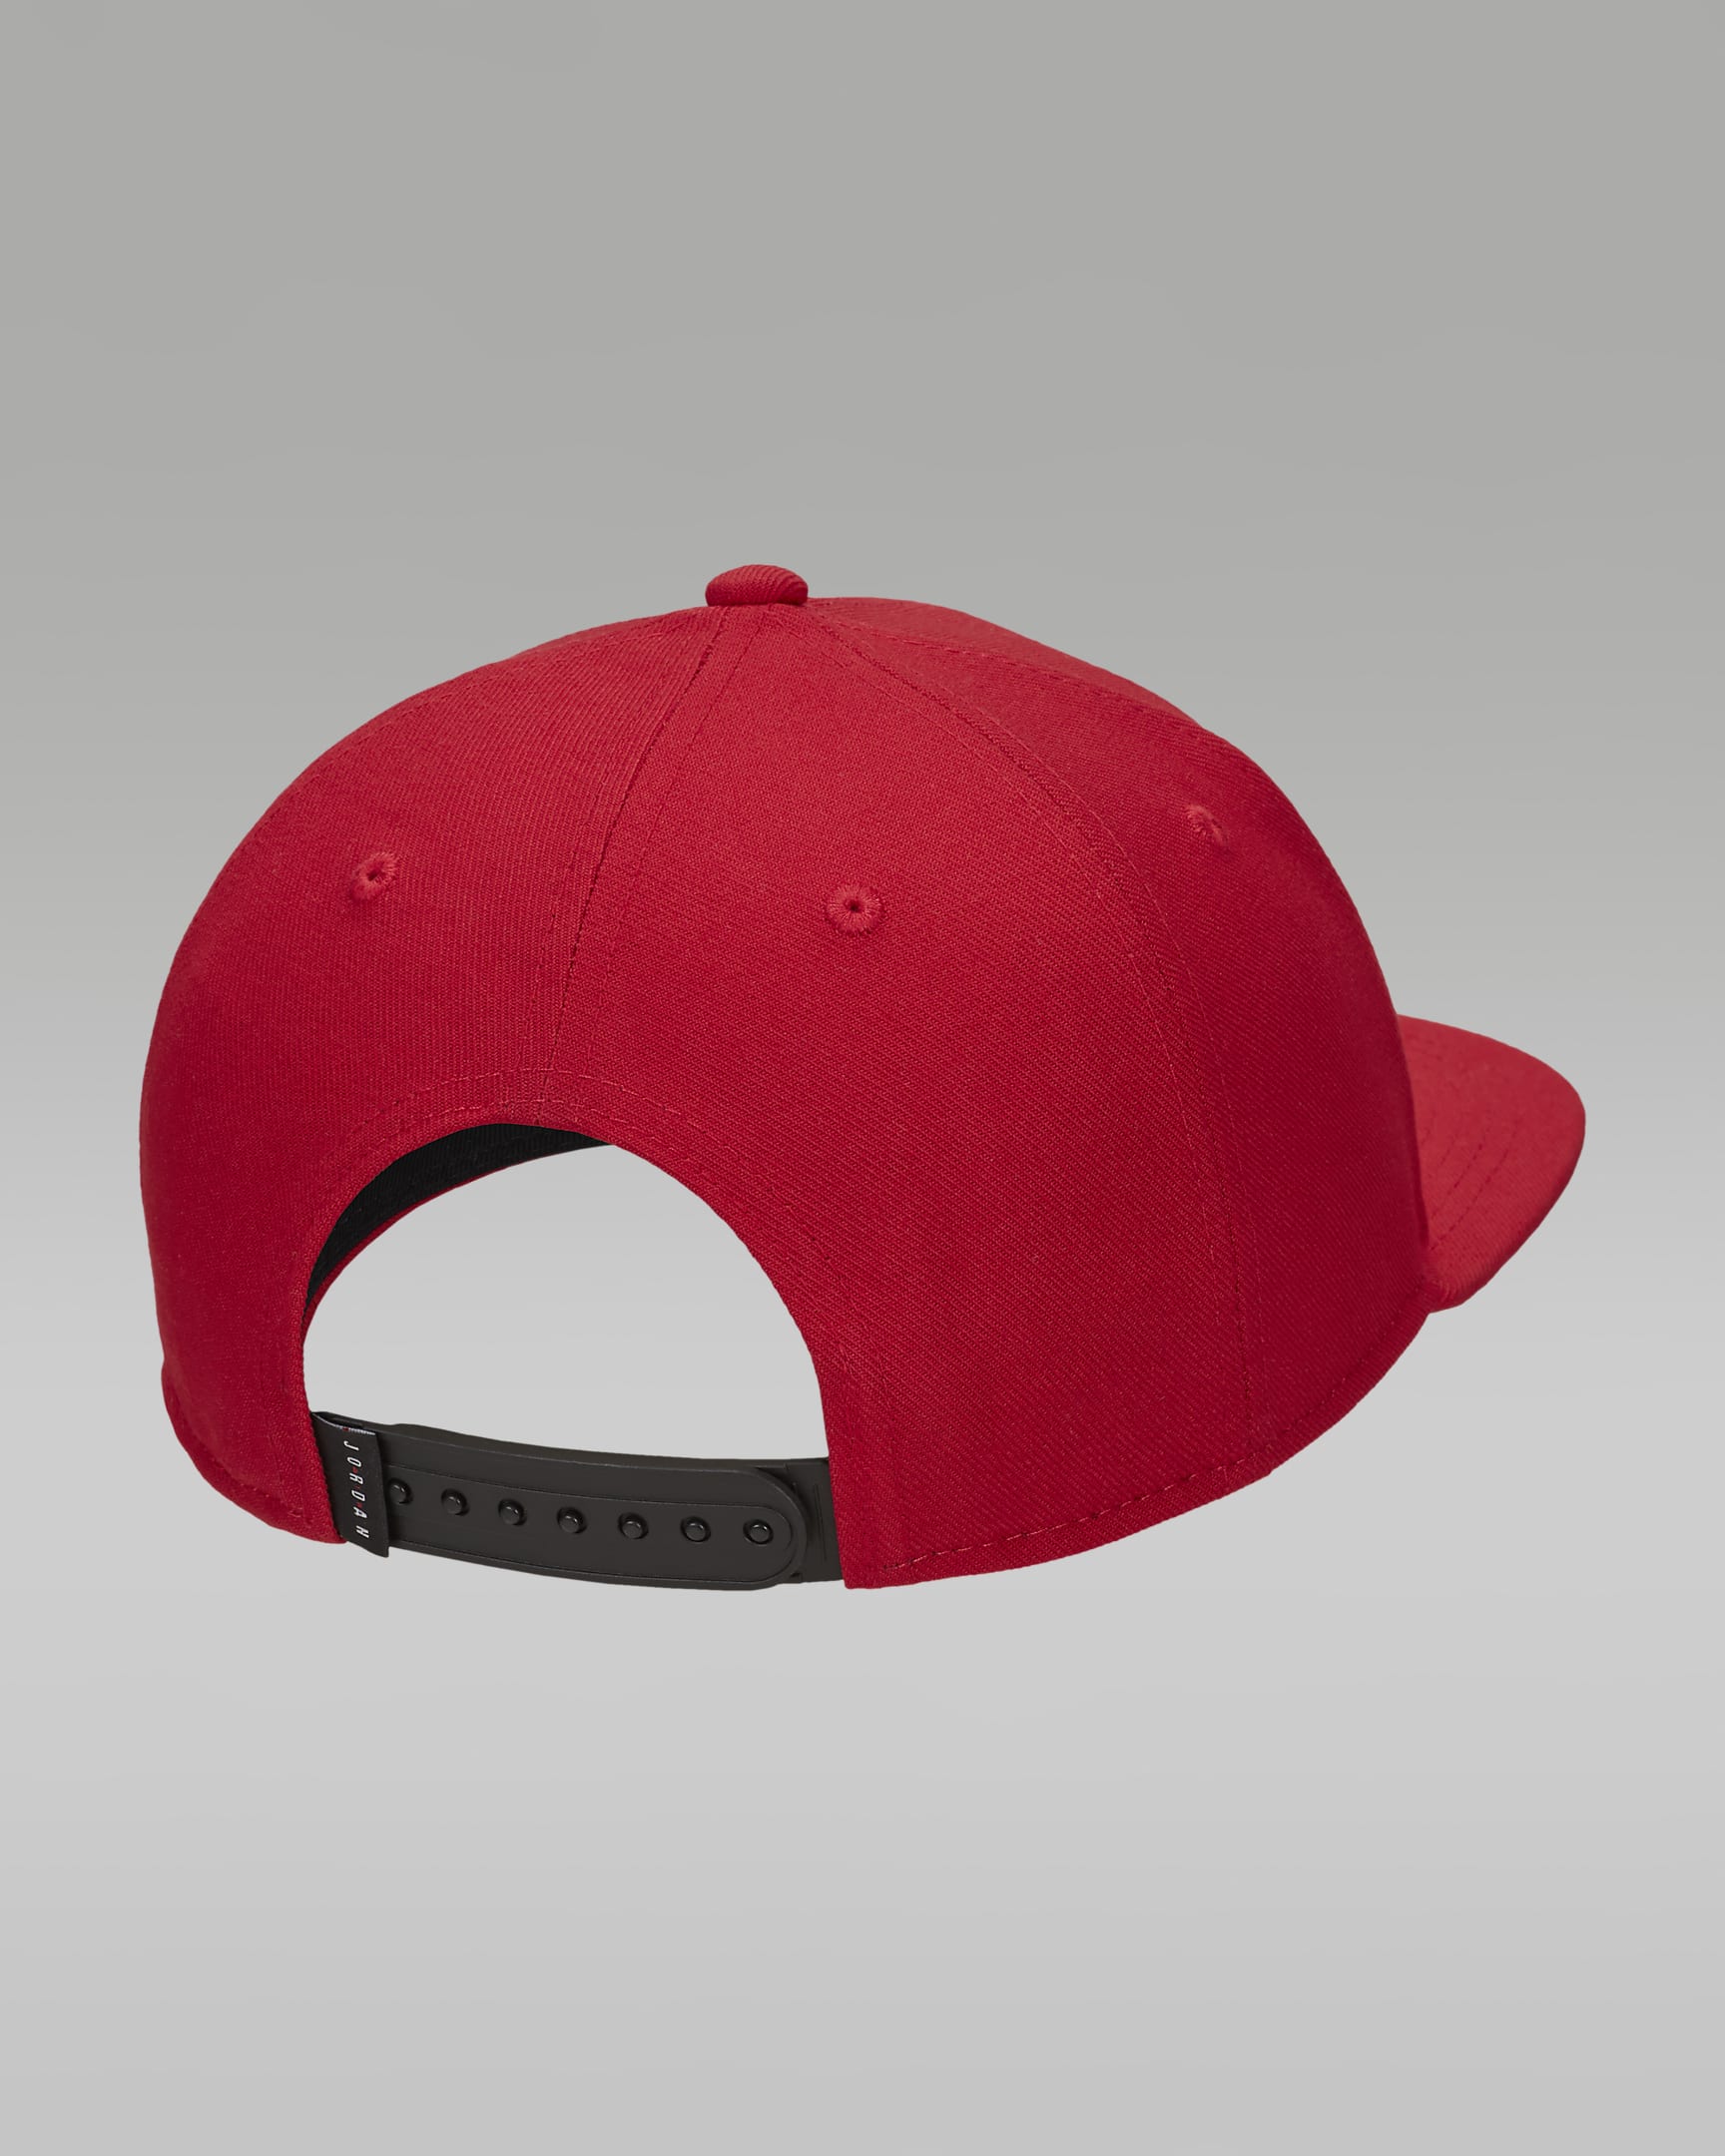 Jordan Pro Cap Adjustable Hat - Gym Red/Black/Black